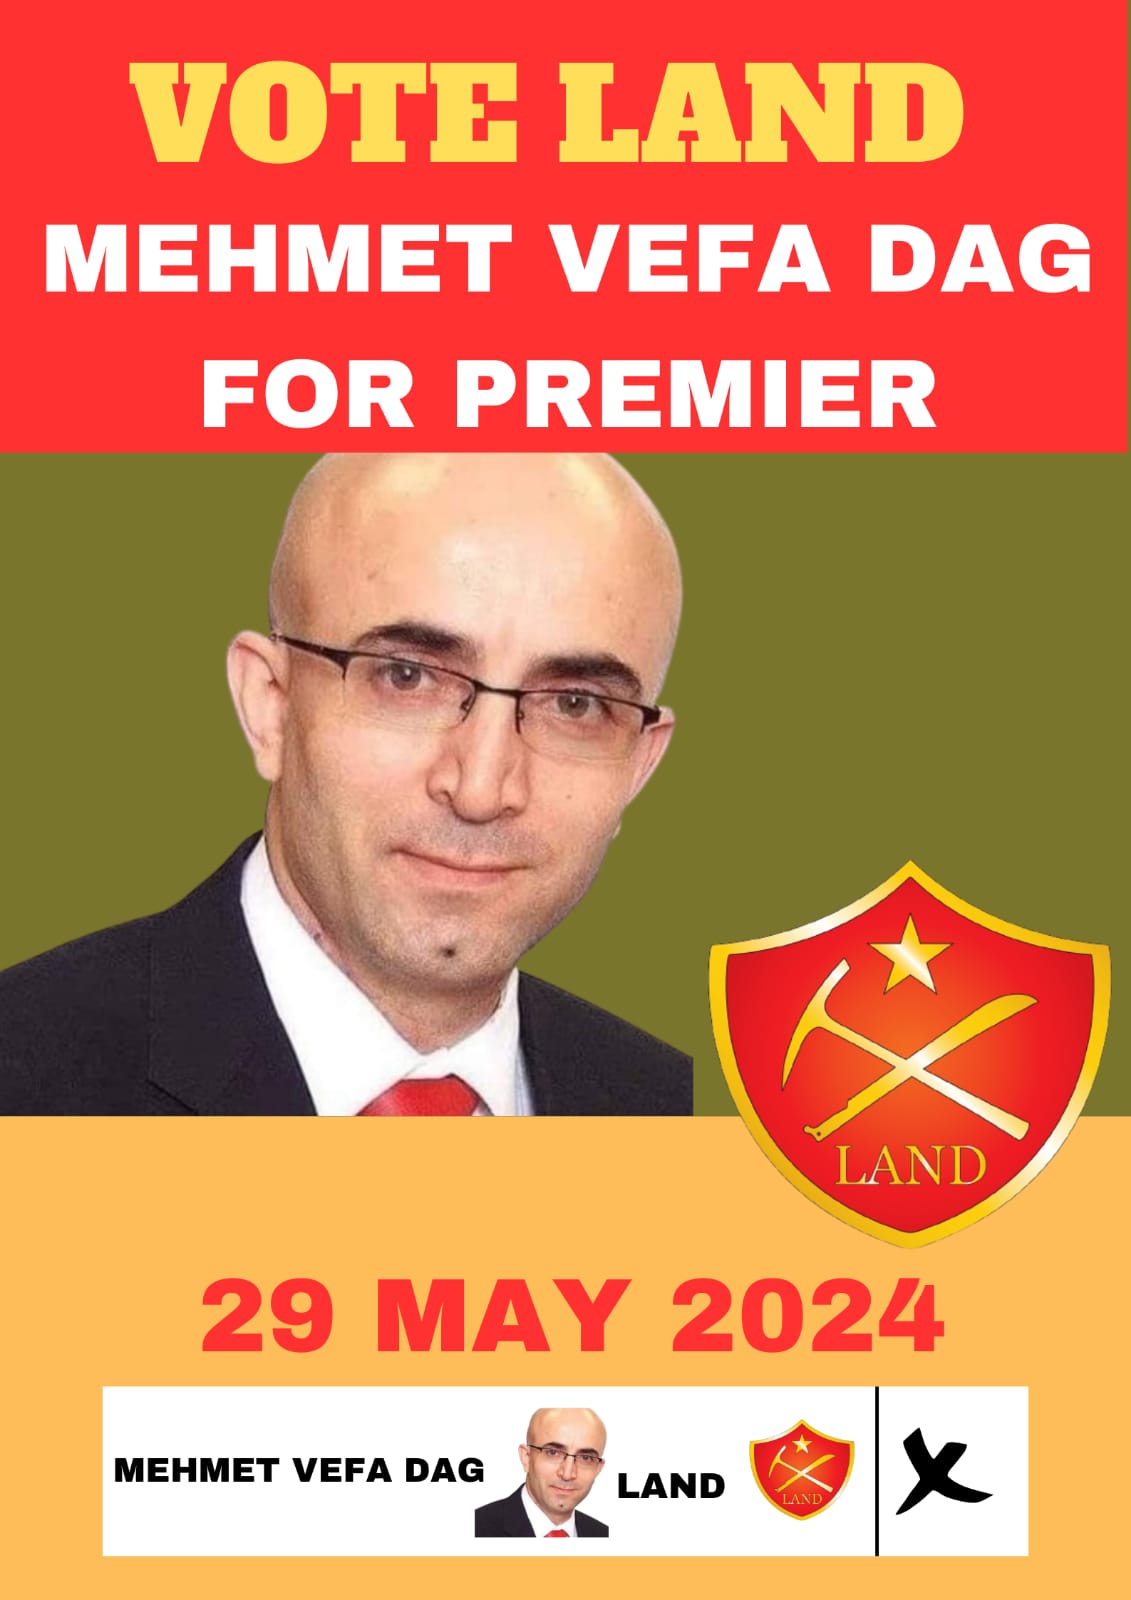 Foto: Kürt siyasetçi Mehmet Vefa Dağ'ın seçimde kullandığı poster